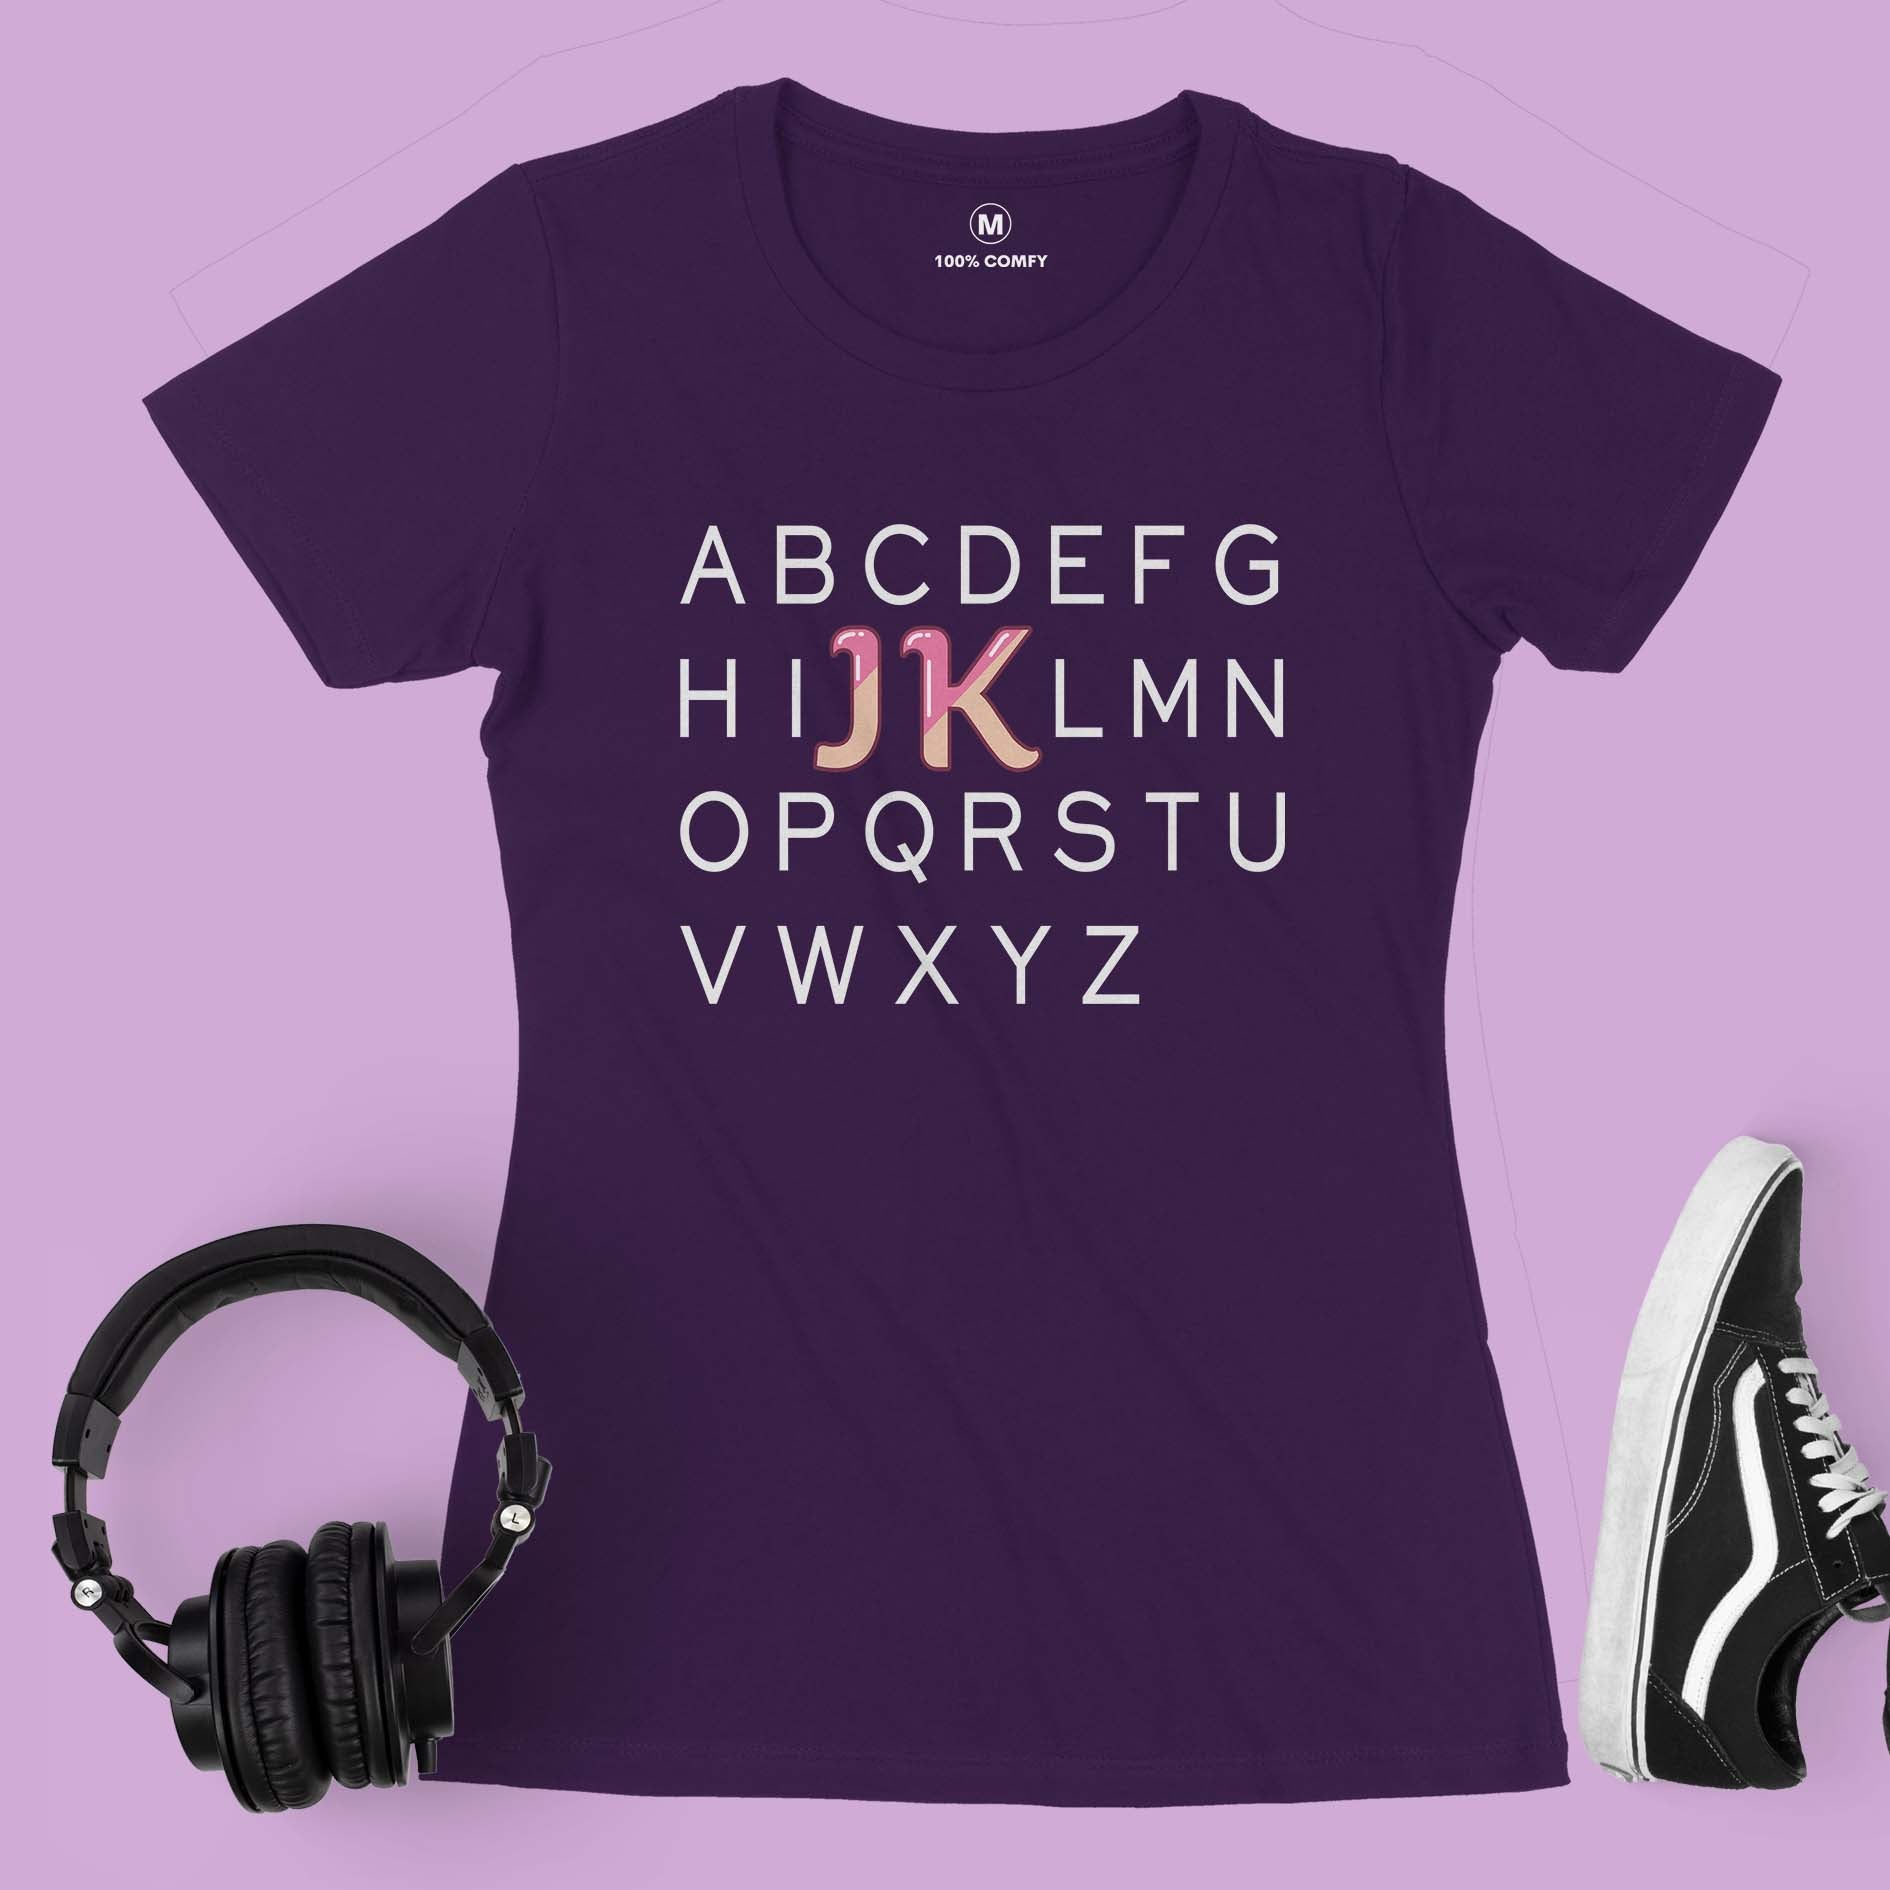 JK - Women T-shirt